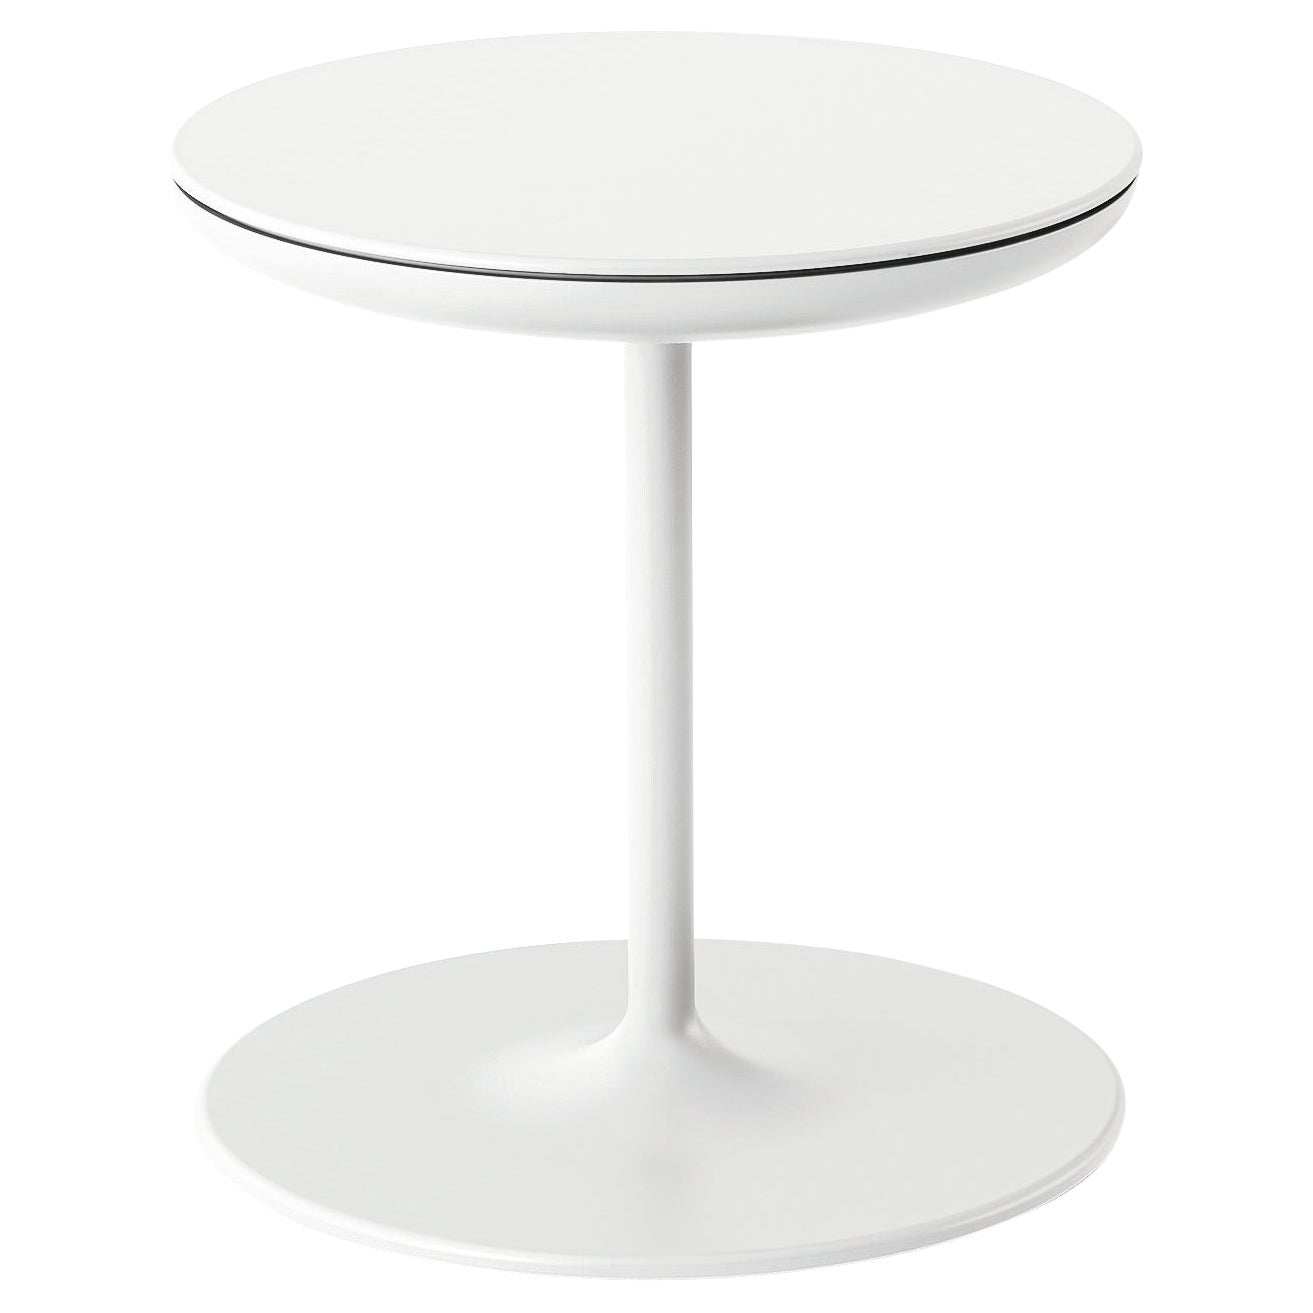 Petite table Zanotta Toi en finition blanche avec plateau en contreplaqué par Salvatore Indriolo